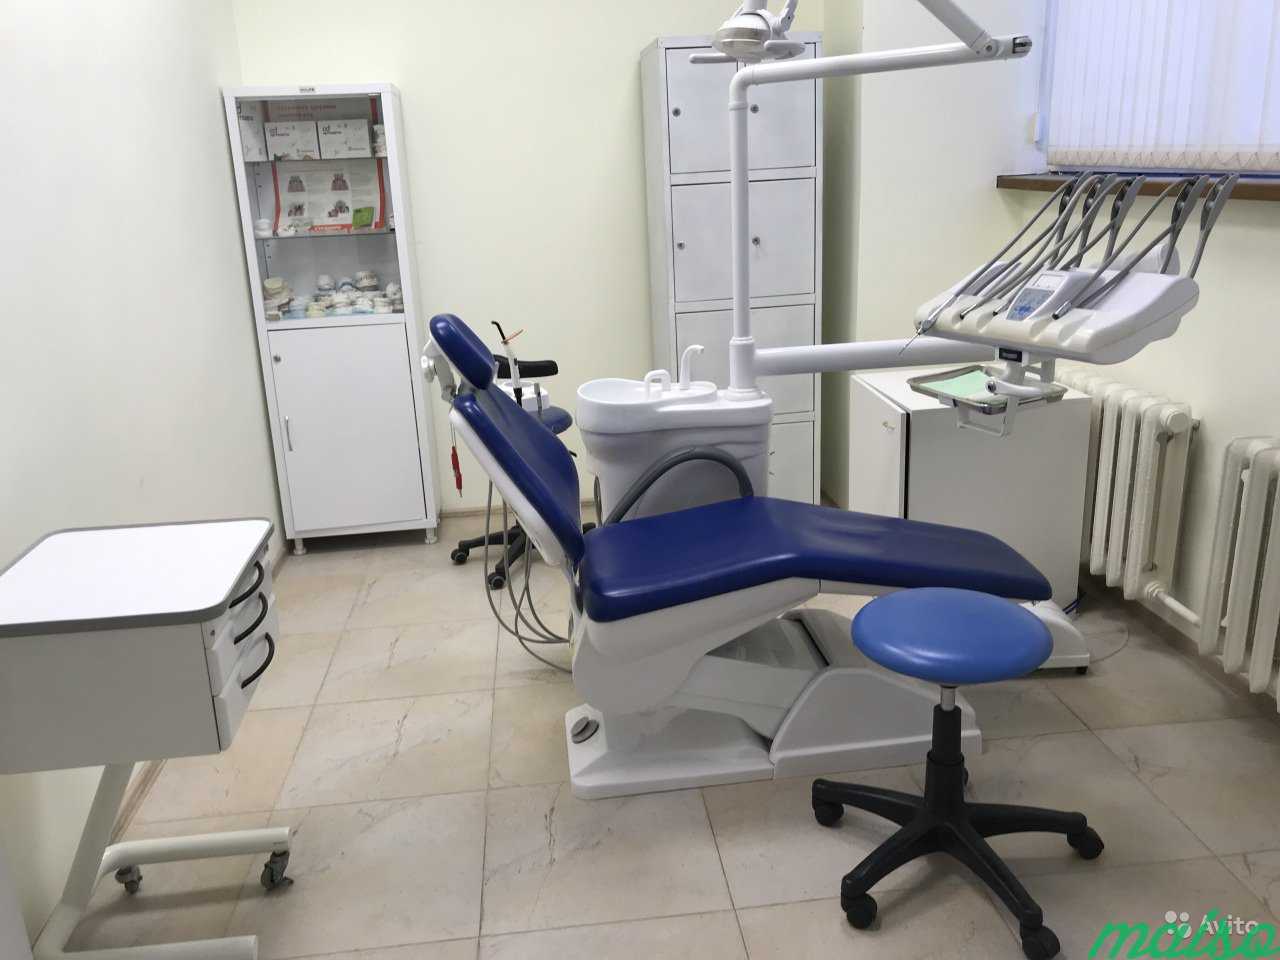 Аренда стоматологического кабинета в Москве. Фото 1